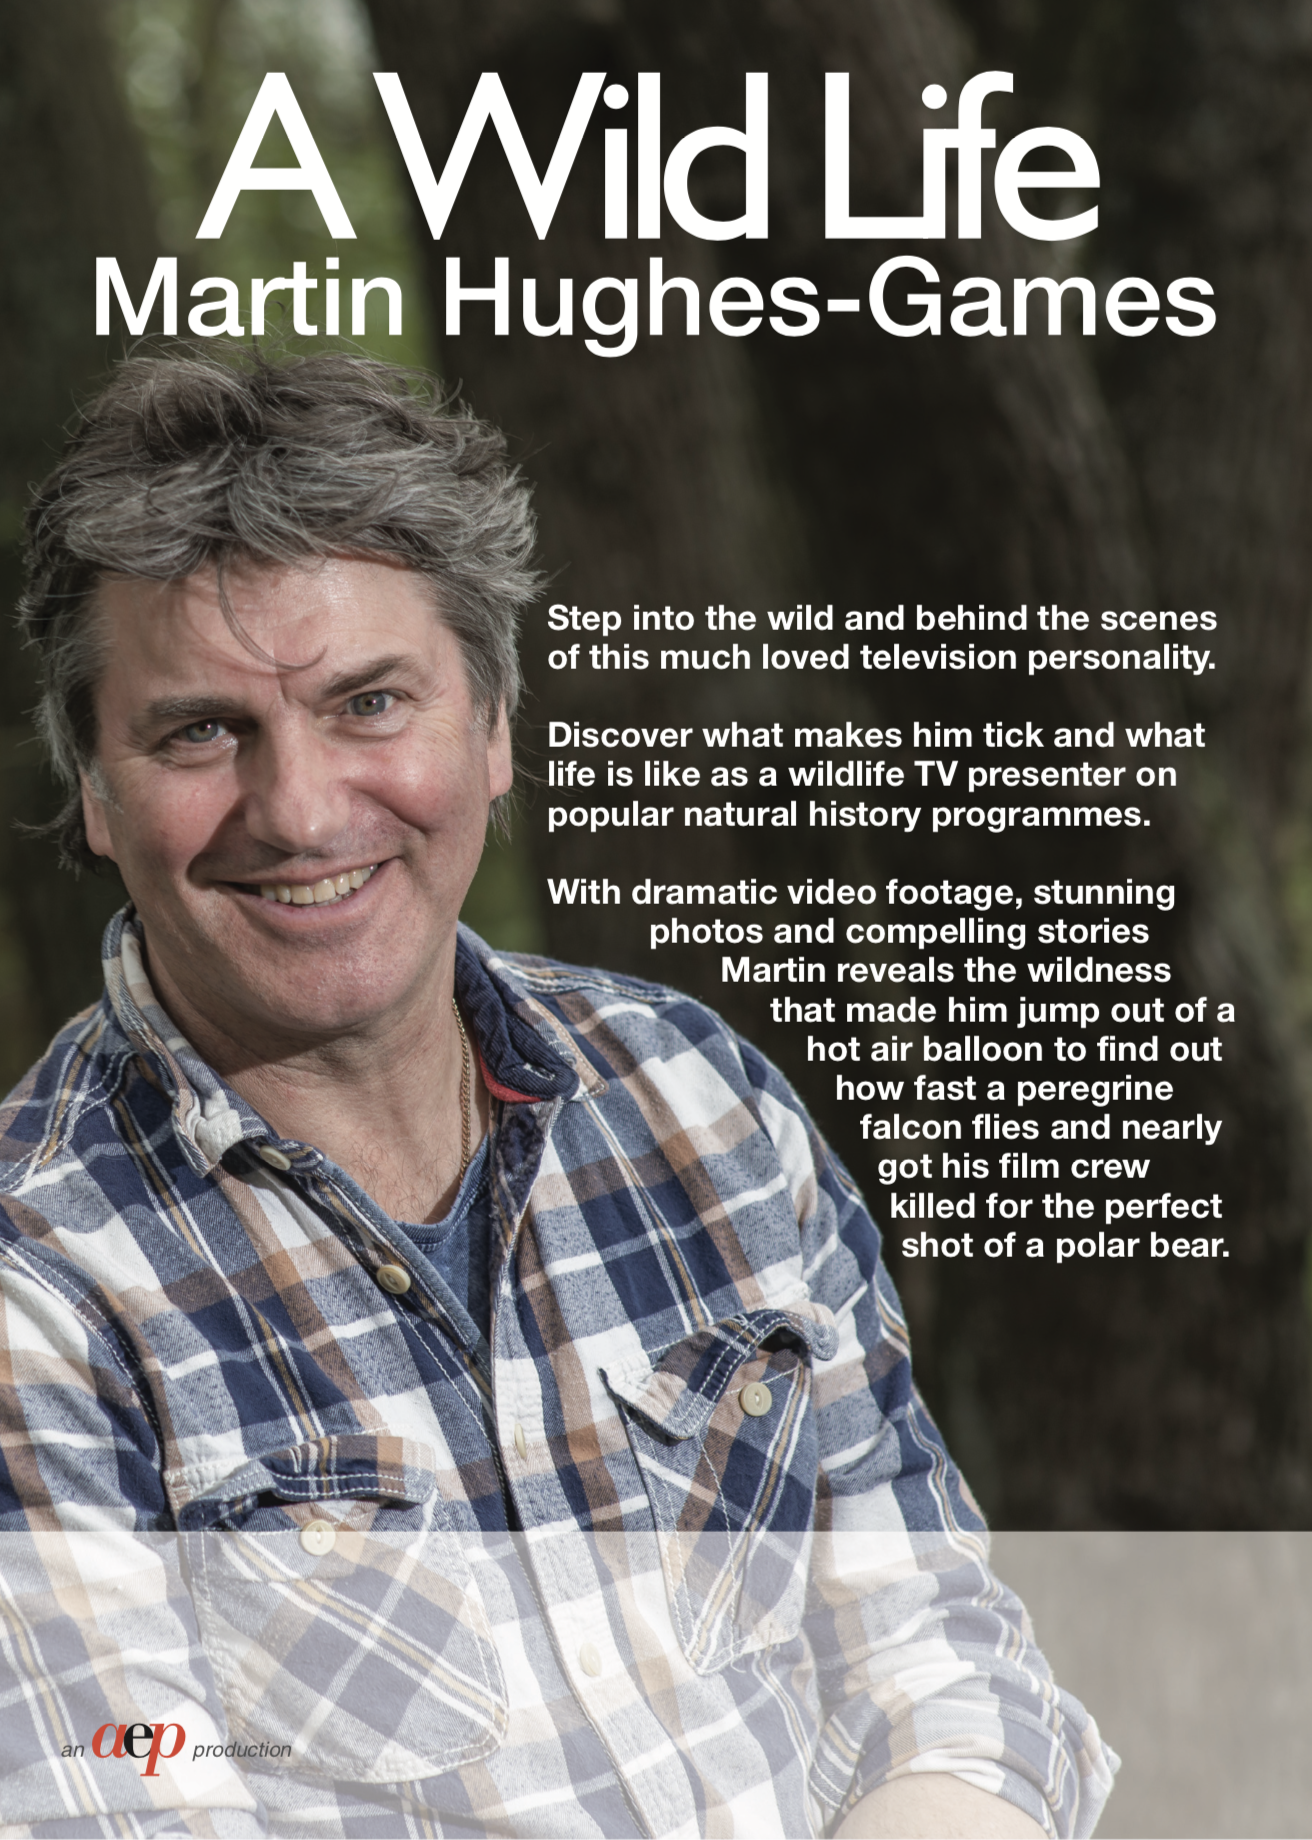 Martin Hughes-Games